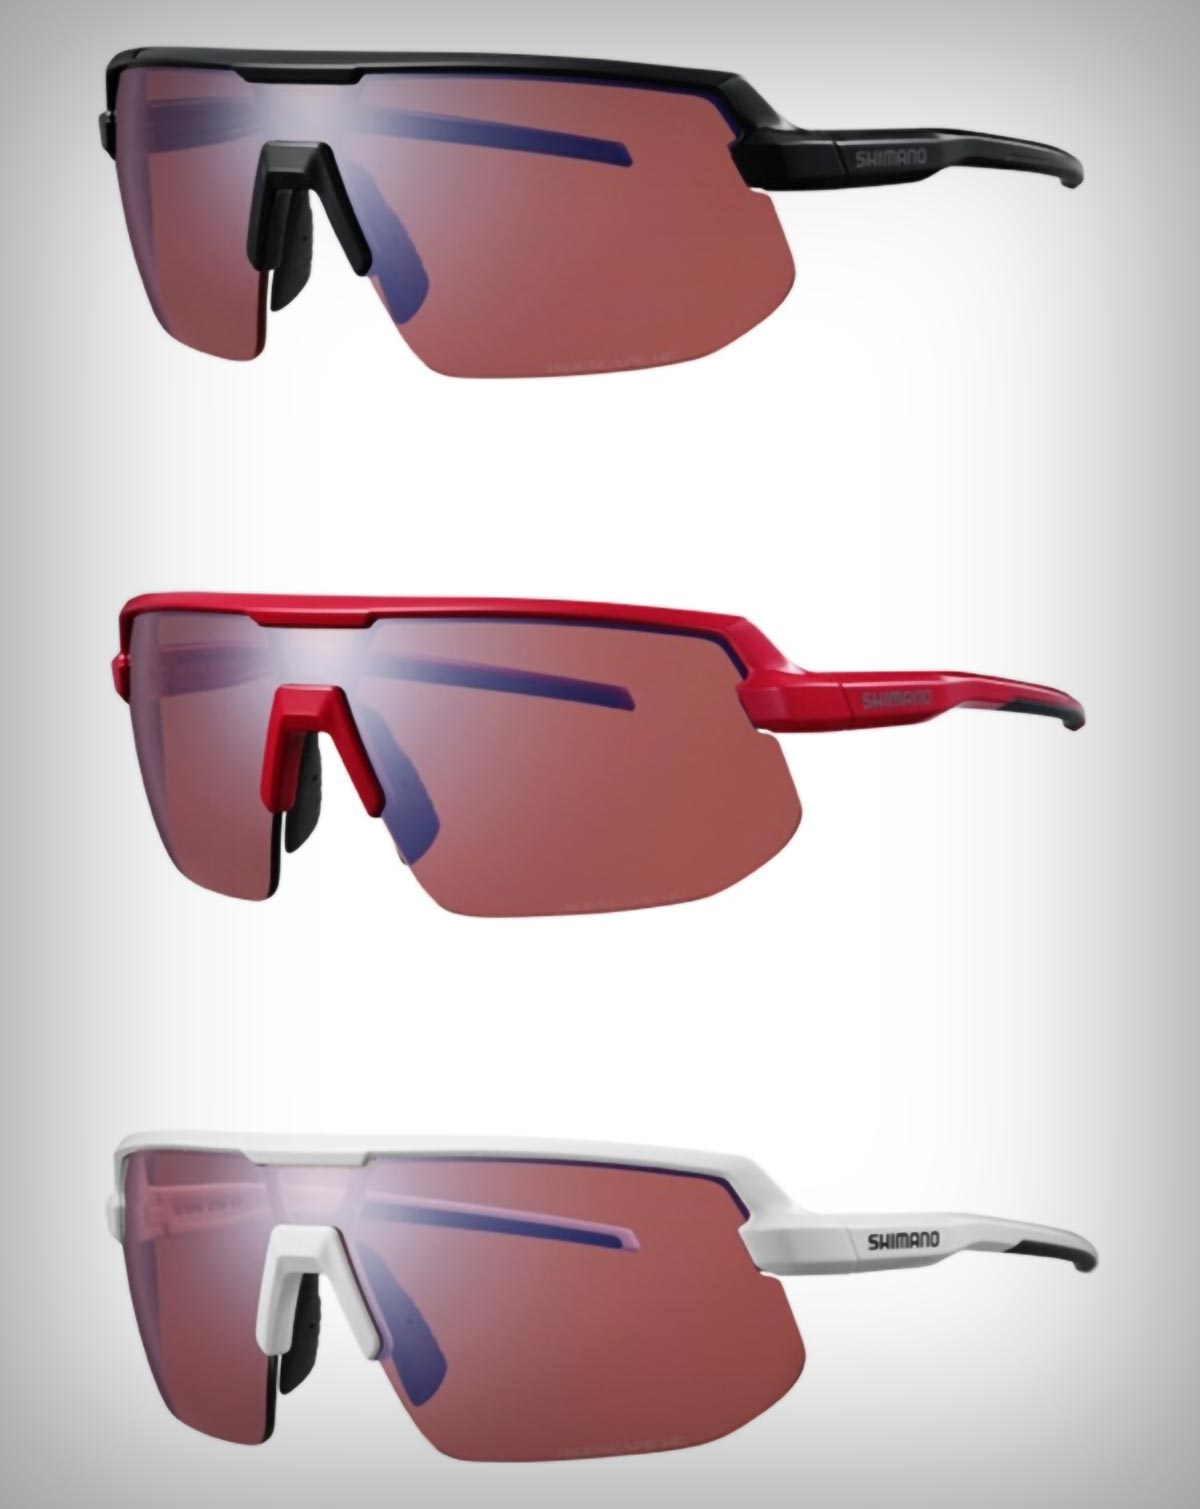 Shimano presenta tres modelos de gafas de ciclismo con lentes RideScape y precios a partir de 49,99 euros